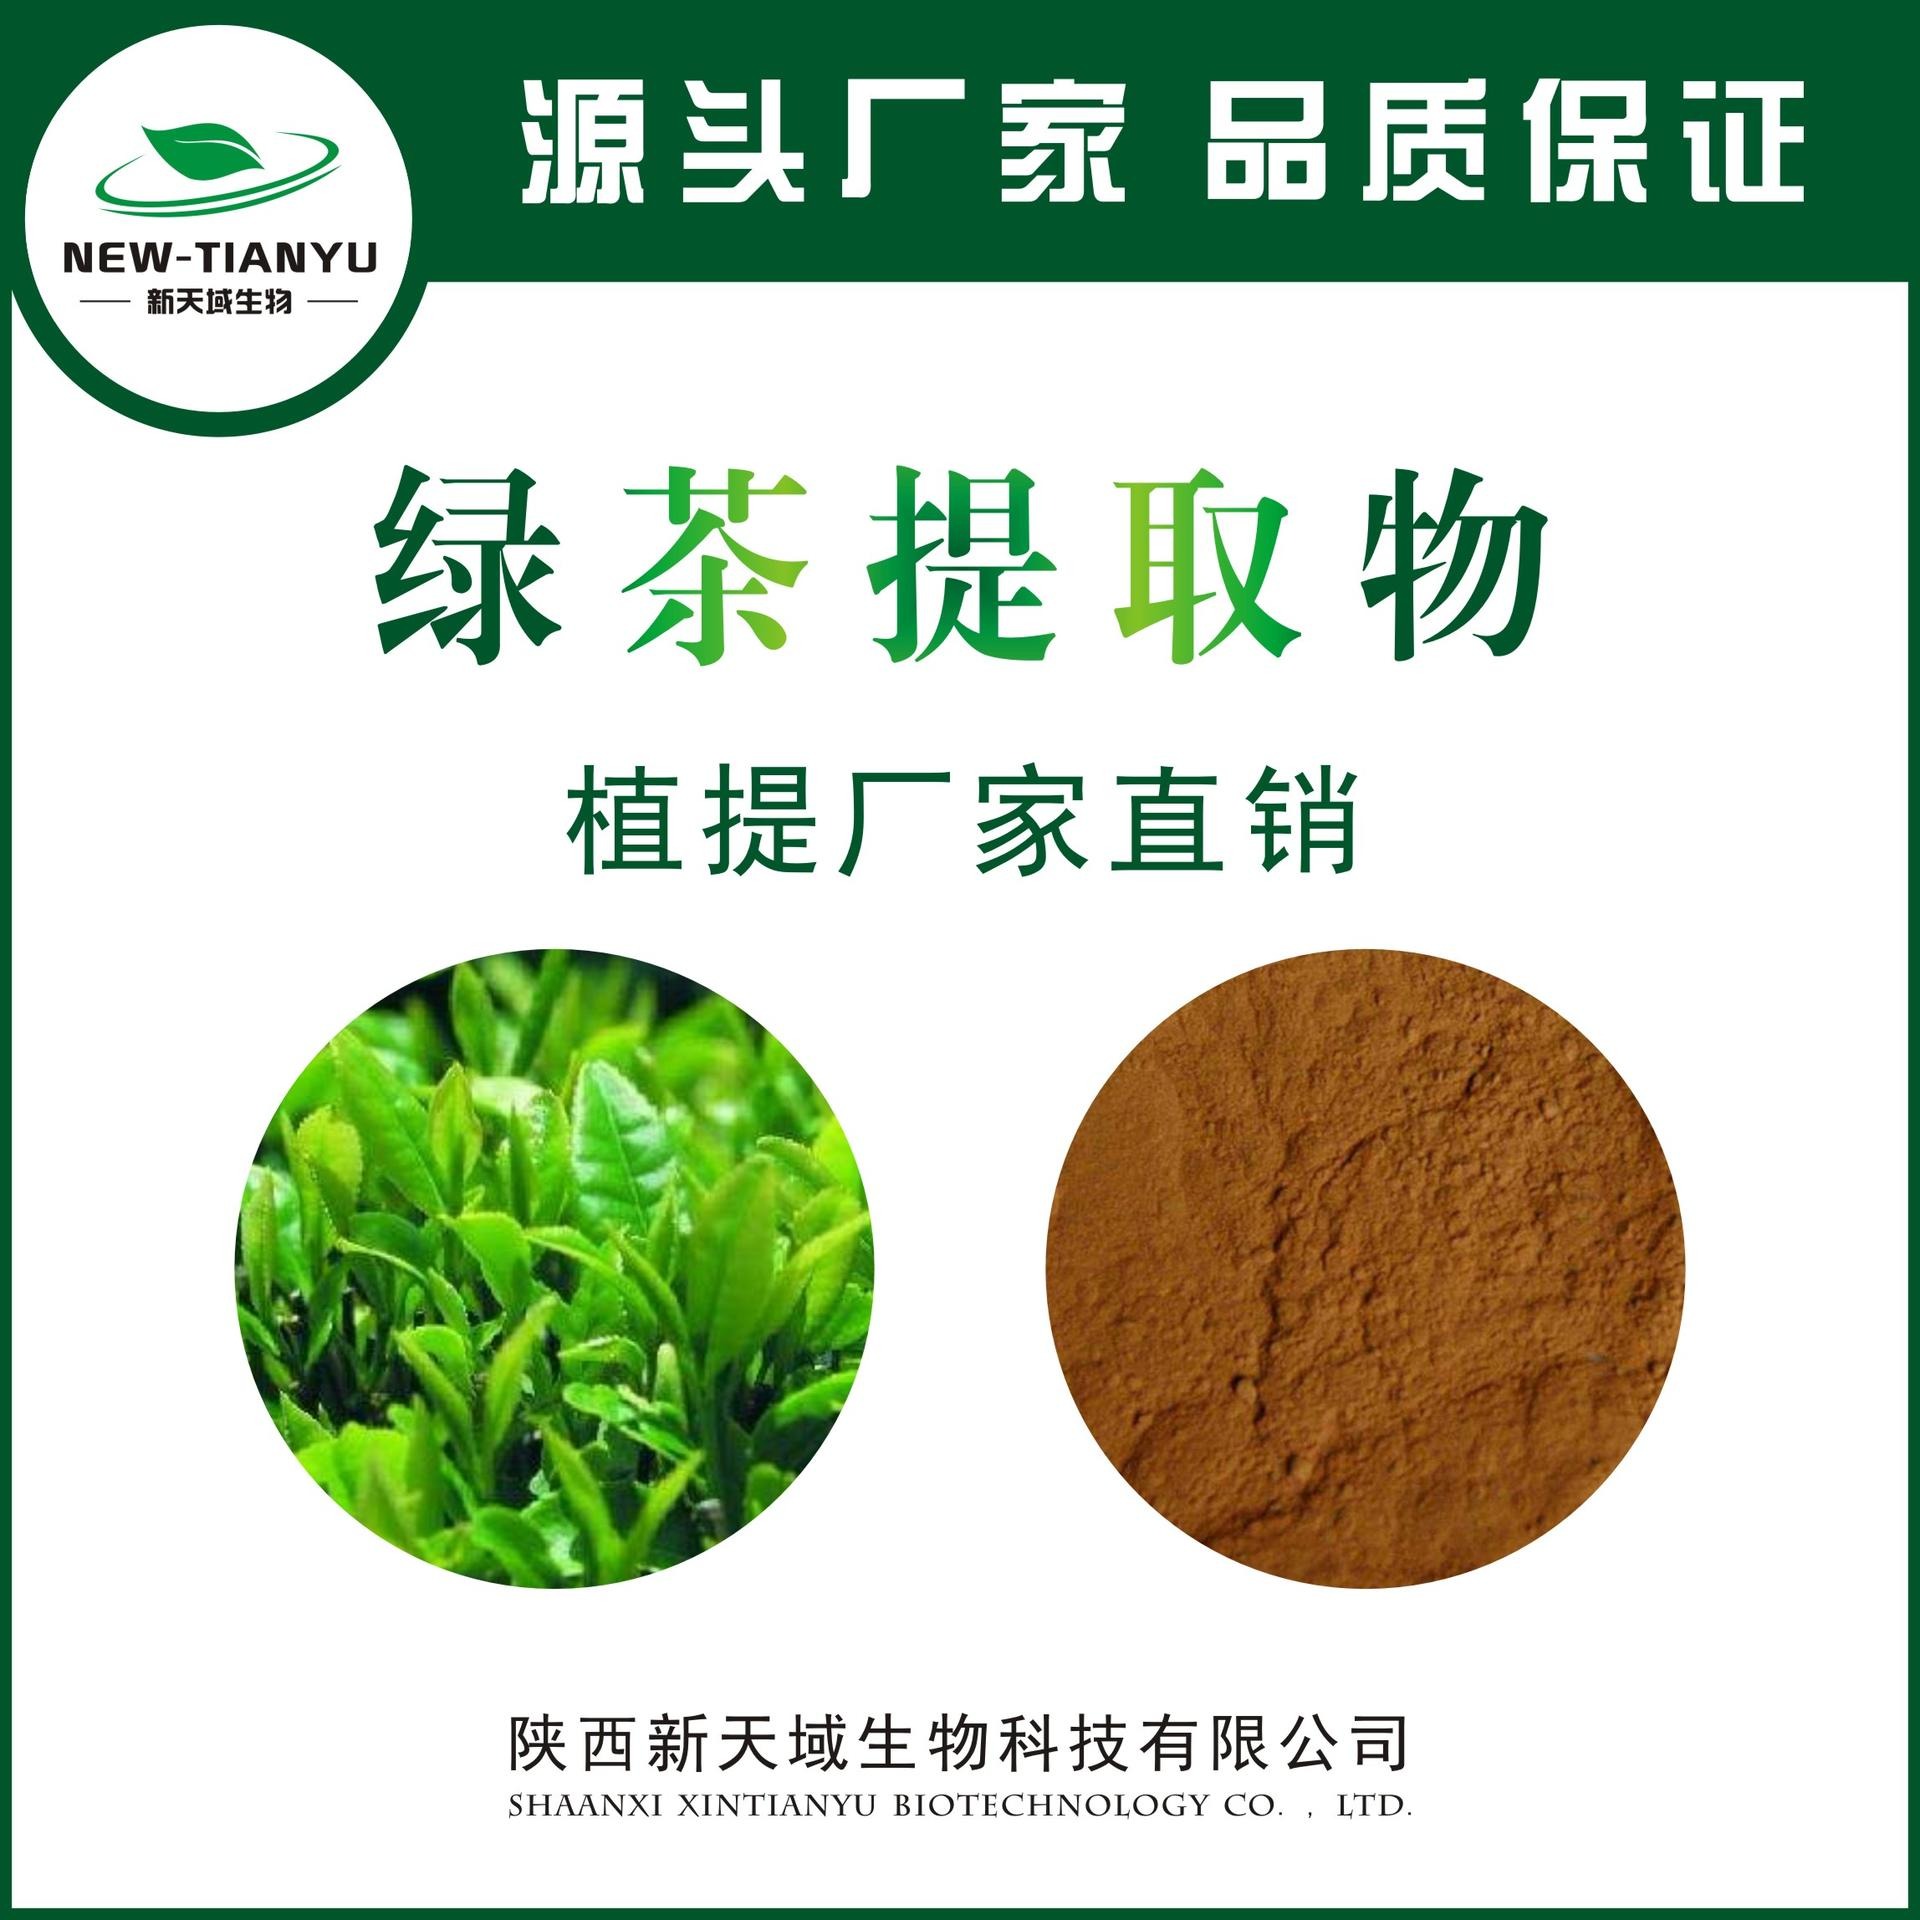 绿茶提取物 绿茶粉 绿茶萃取物 绿茶浓缩粉 绿茶喷雾干燥粉 生产厂家 厂家现货